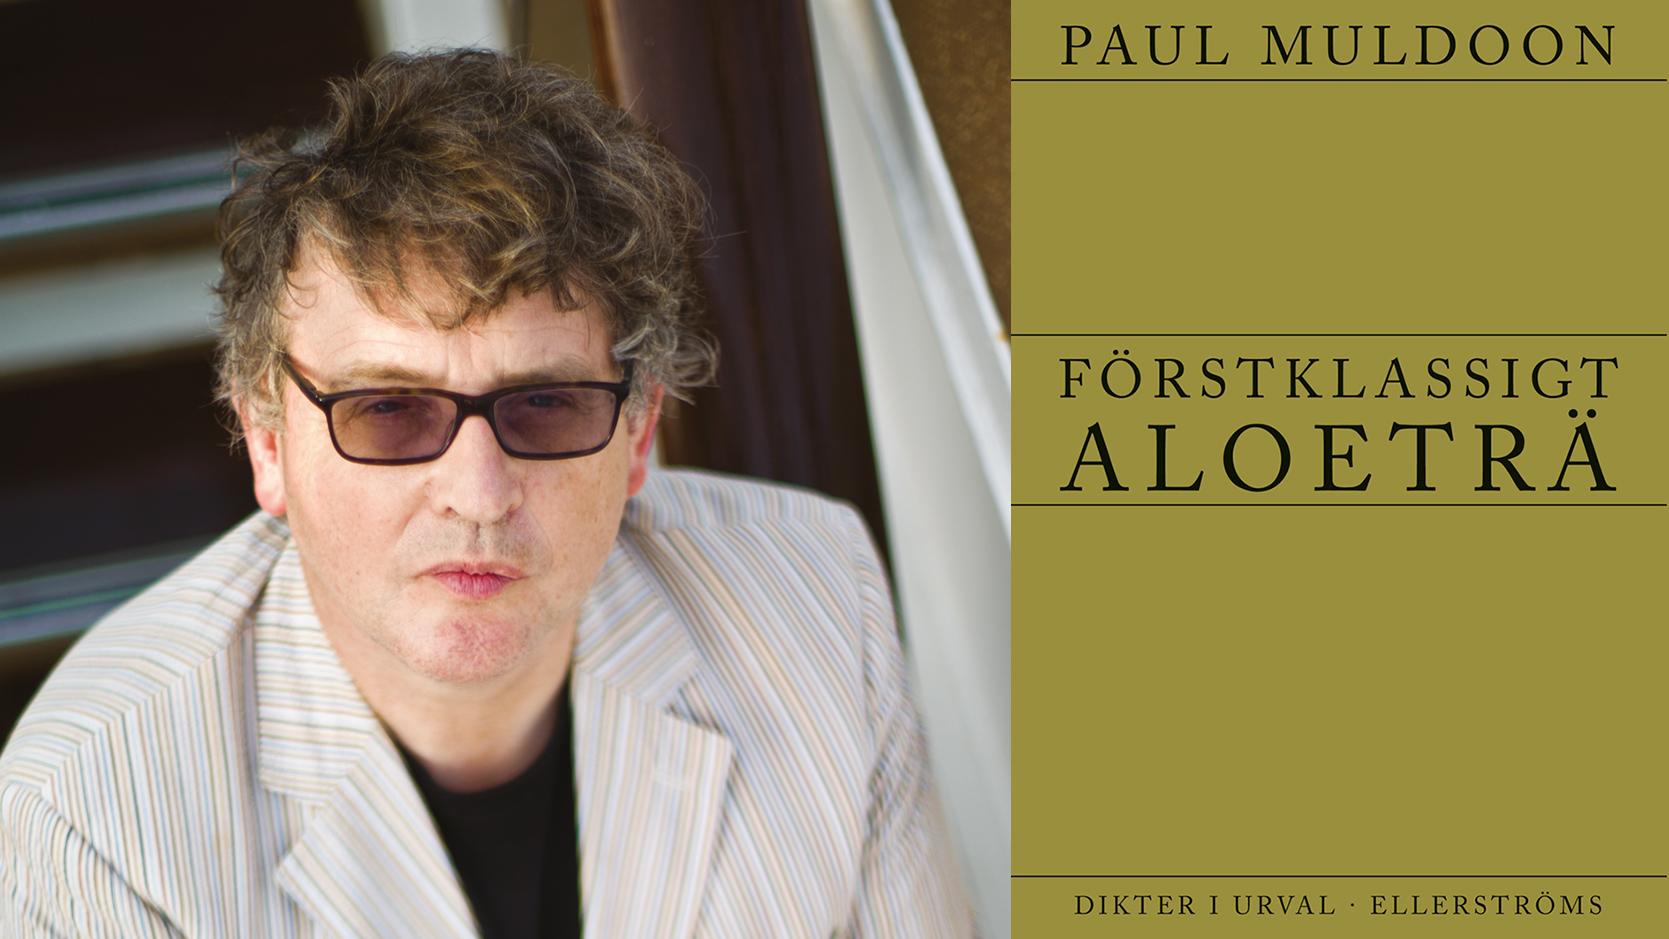 Paul Muldoon, född 1951 i Nordirland, har gett ut ett tiotal verk – dikter, essäer och operalibretti. 